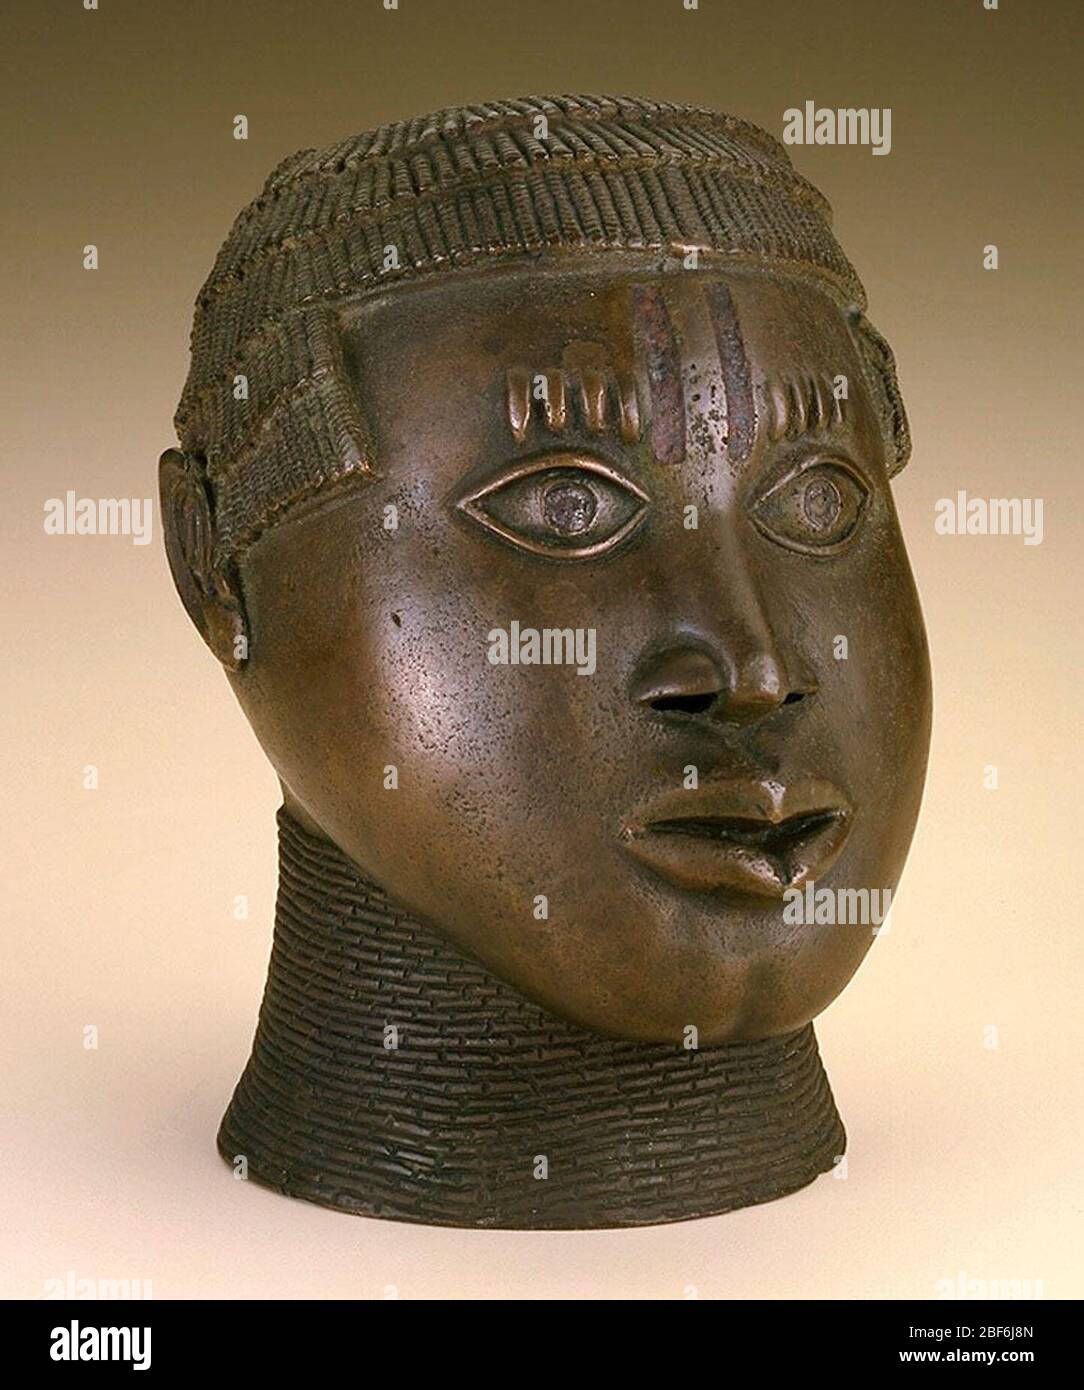 Stile tribunale del Regno di Benin; Nigeria; fine XV-inizio XVI secolo; lega di rame, inserto in ferro; a x L x P: 23.2 x 15.9 x 20 cm (9 1/8 x 6 1/4 x 7 7/8 in.) Foto Stock